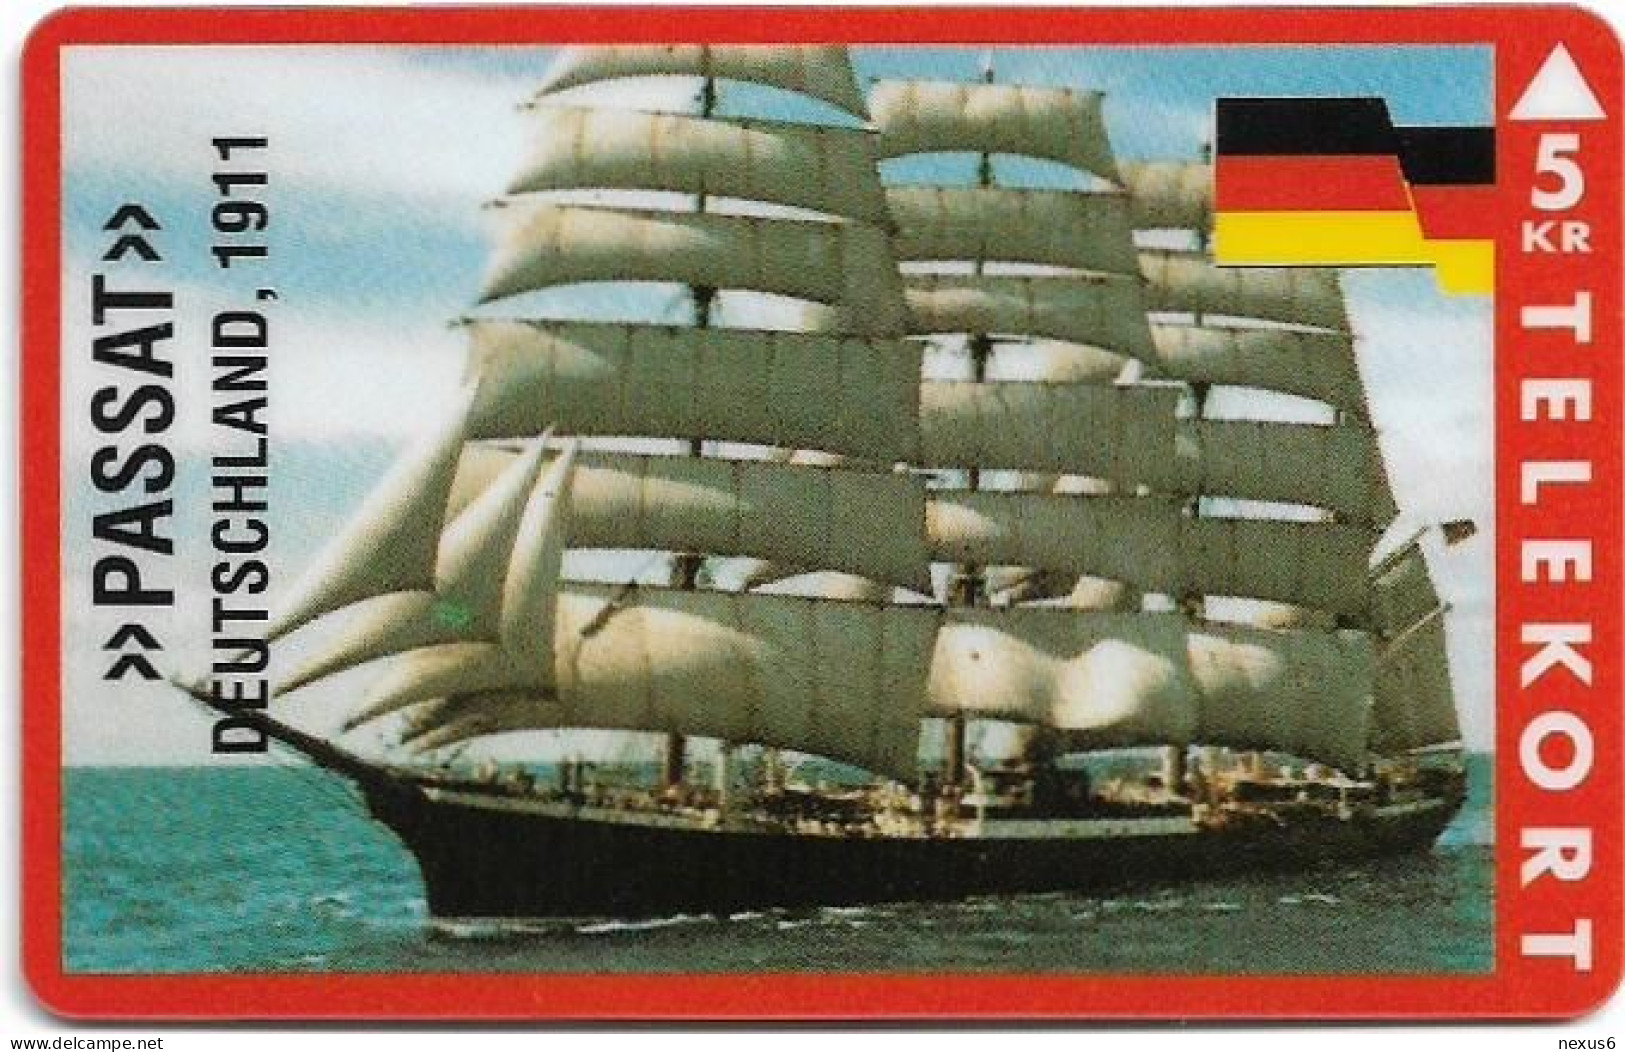 Denmark - KTAS - Ships (Red) - Germany - Passat - TDKP147 - 05.1995, 5kr, 1.500ex, Used - Dänemark